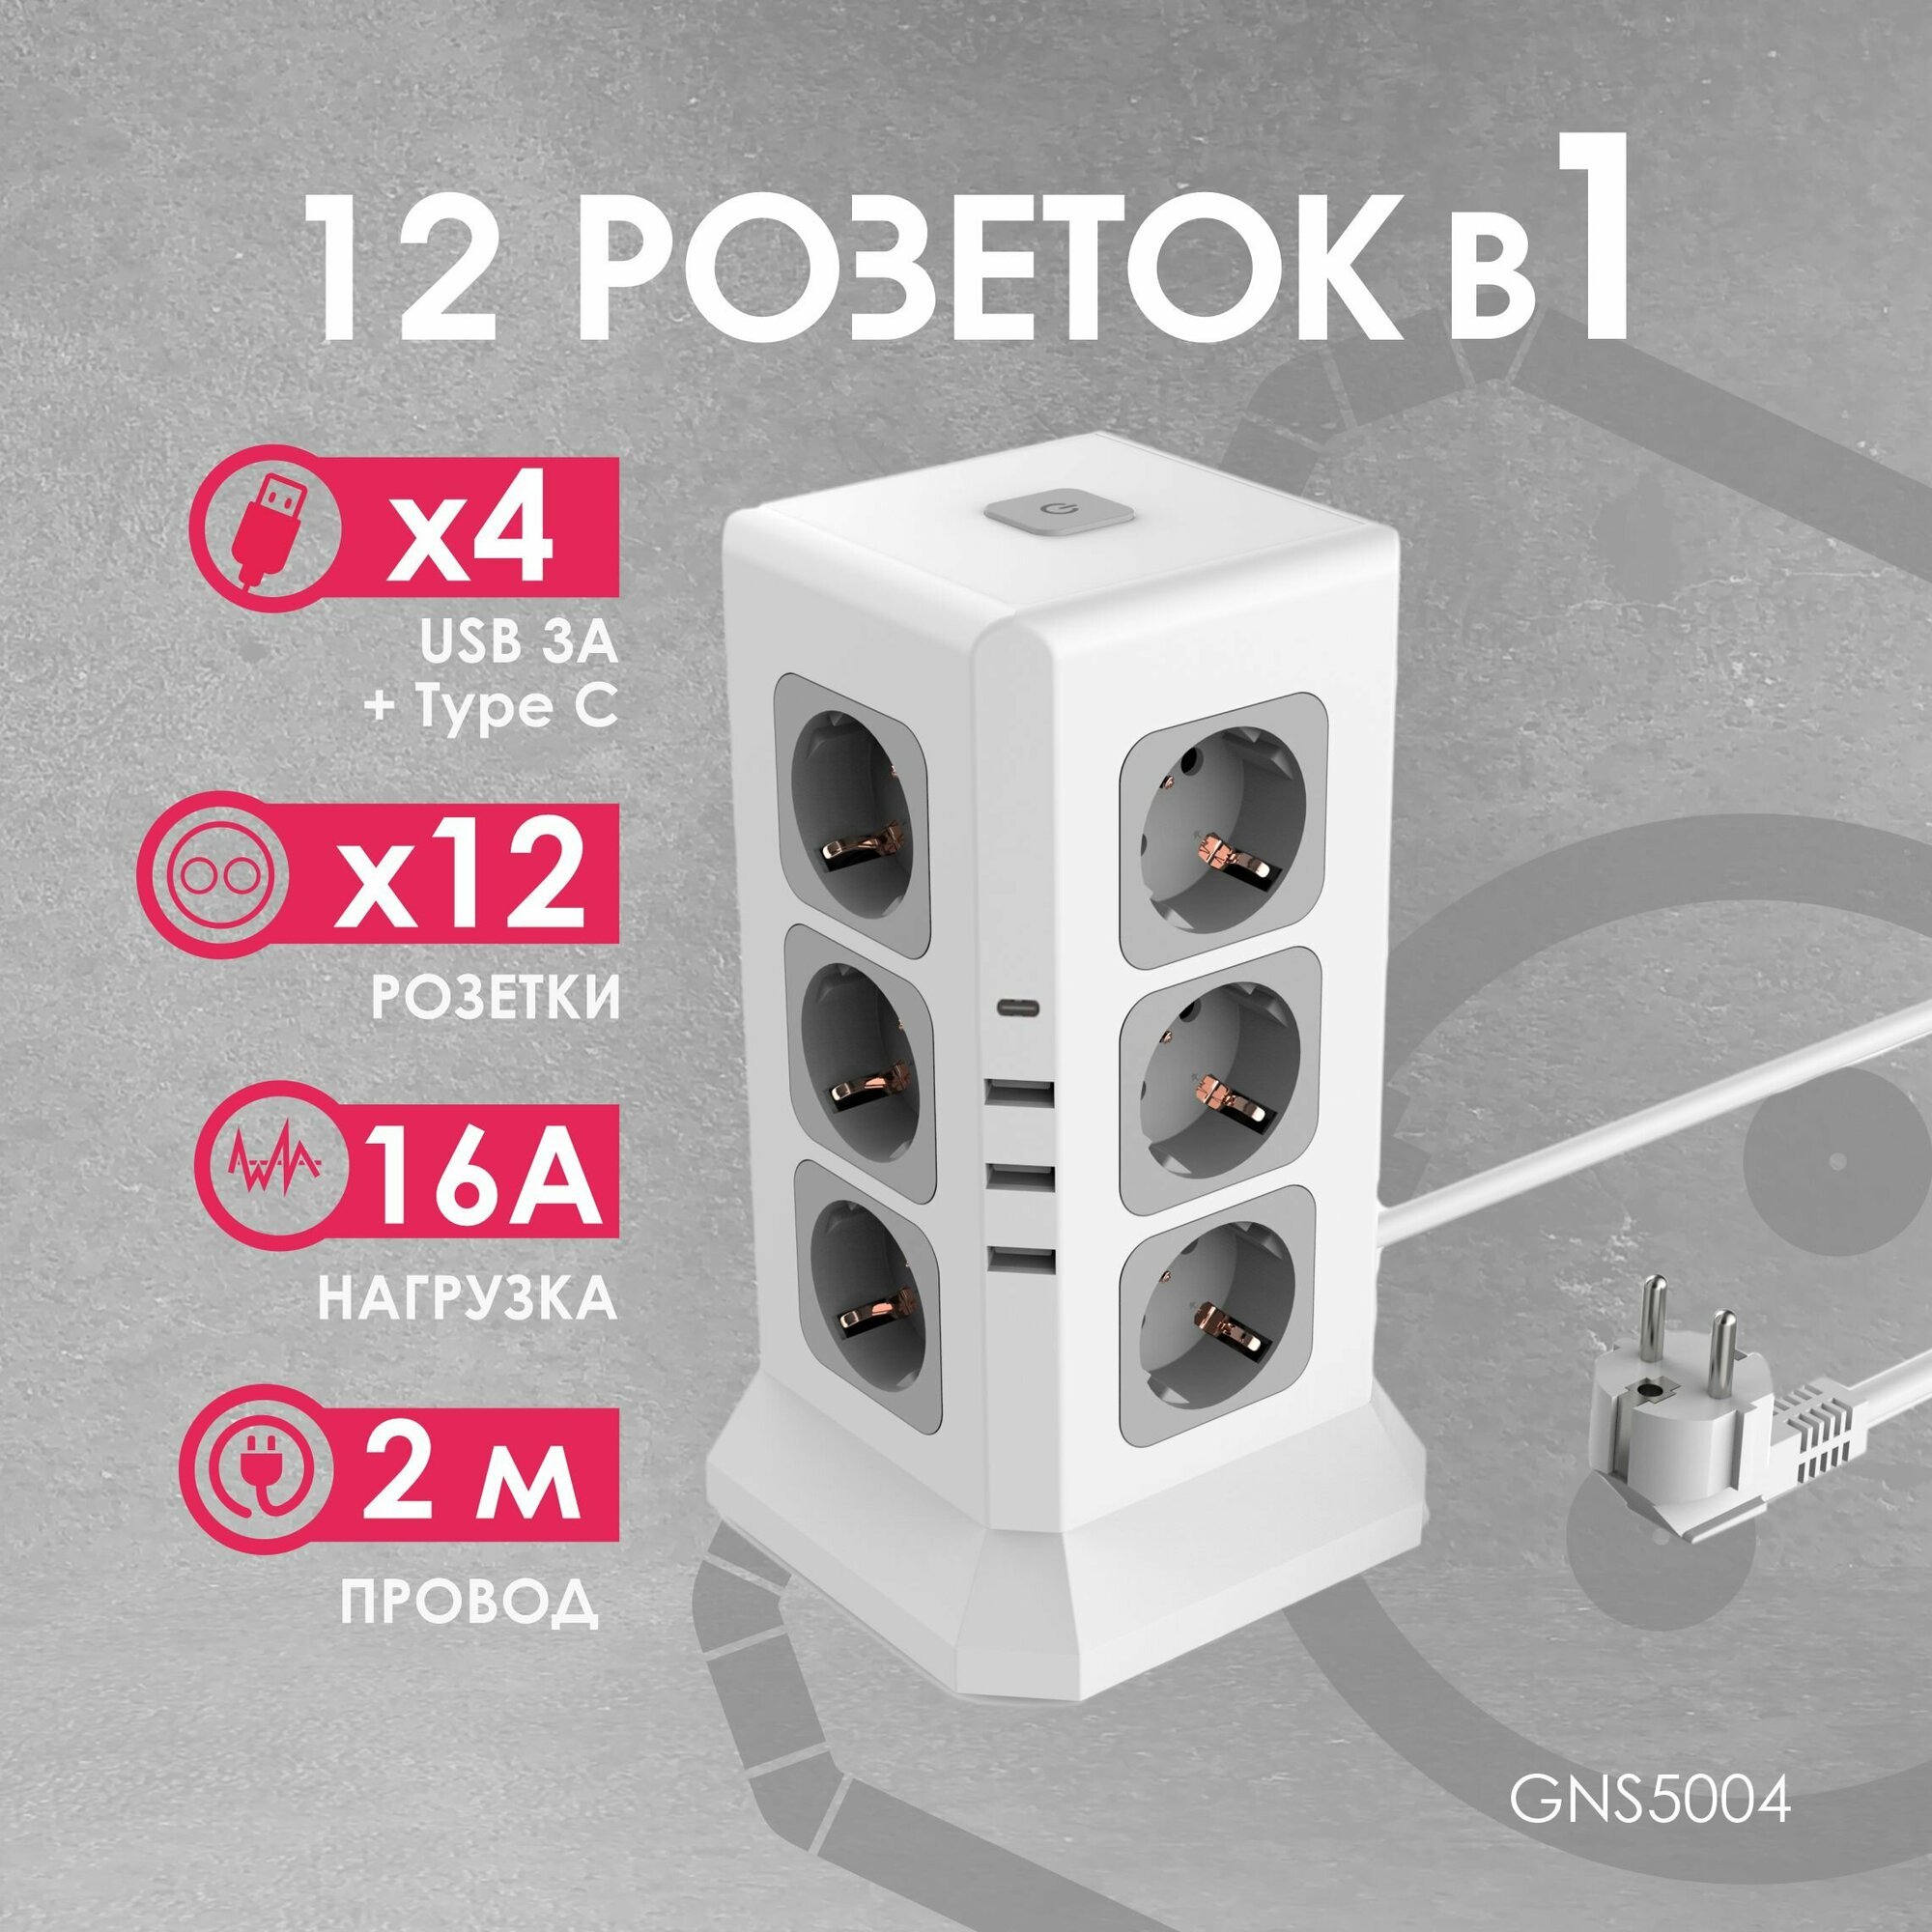 Удлинитель Tower Extended 12 Euro 16A 4 USB 3A+C с блоком 5В/3.4А кабель 20м RocketSocket цвет белый GNS5004